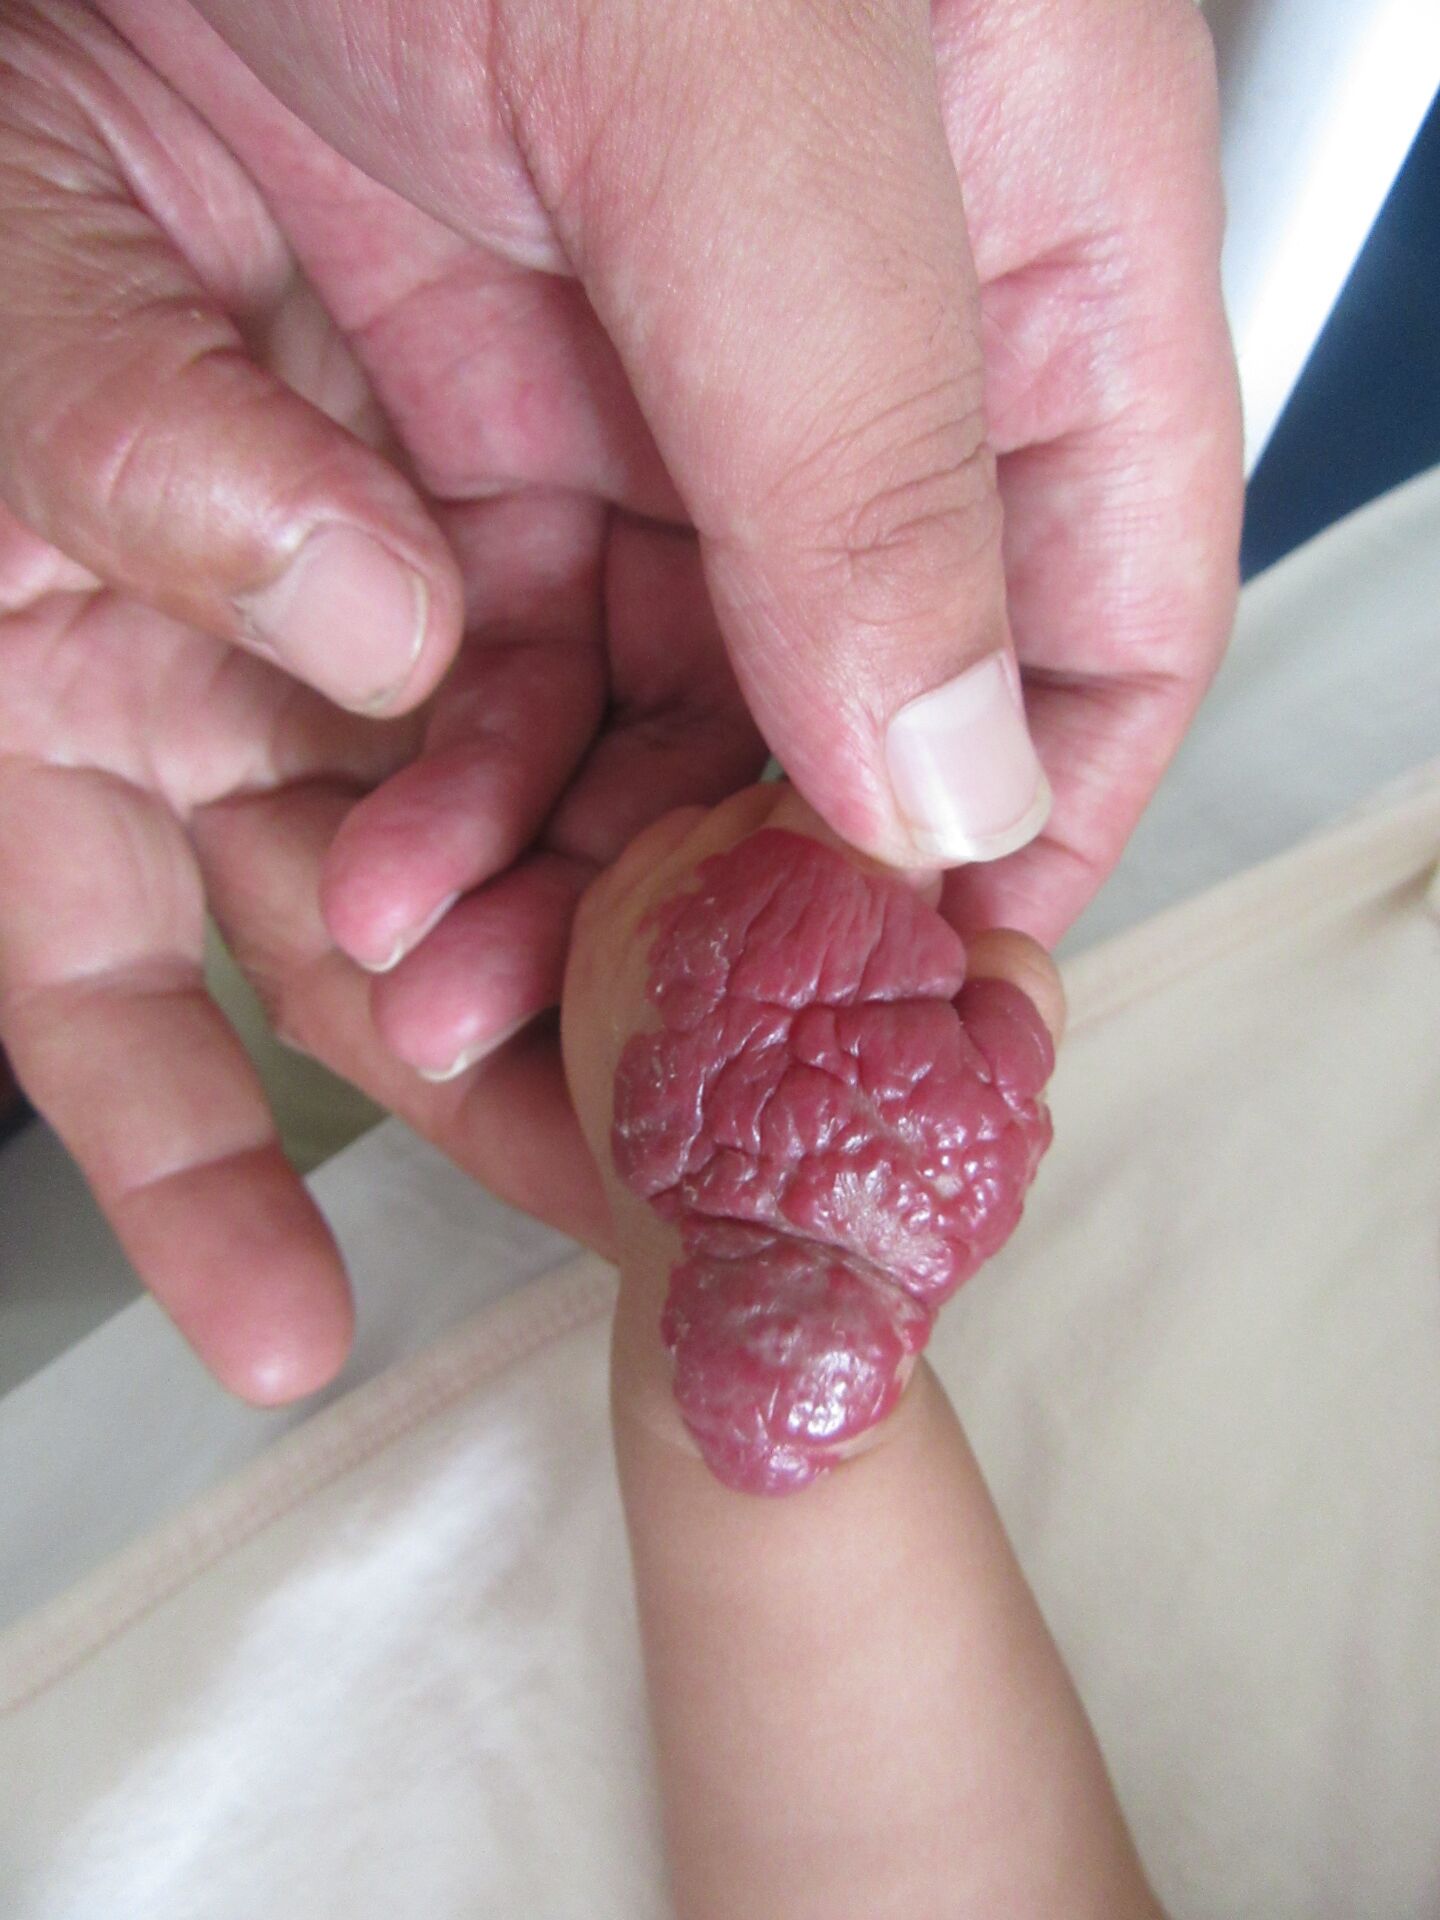 婴幼儿手部血管瘤,成因和症状一目了然!